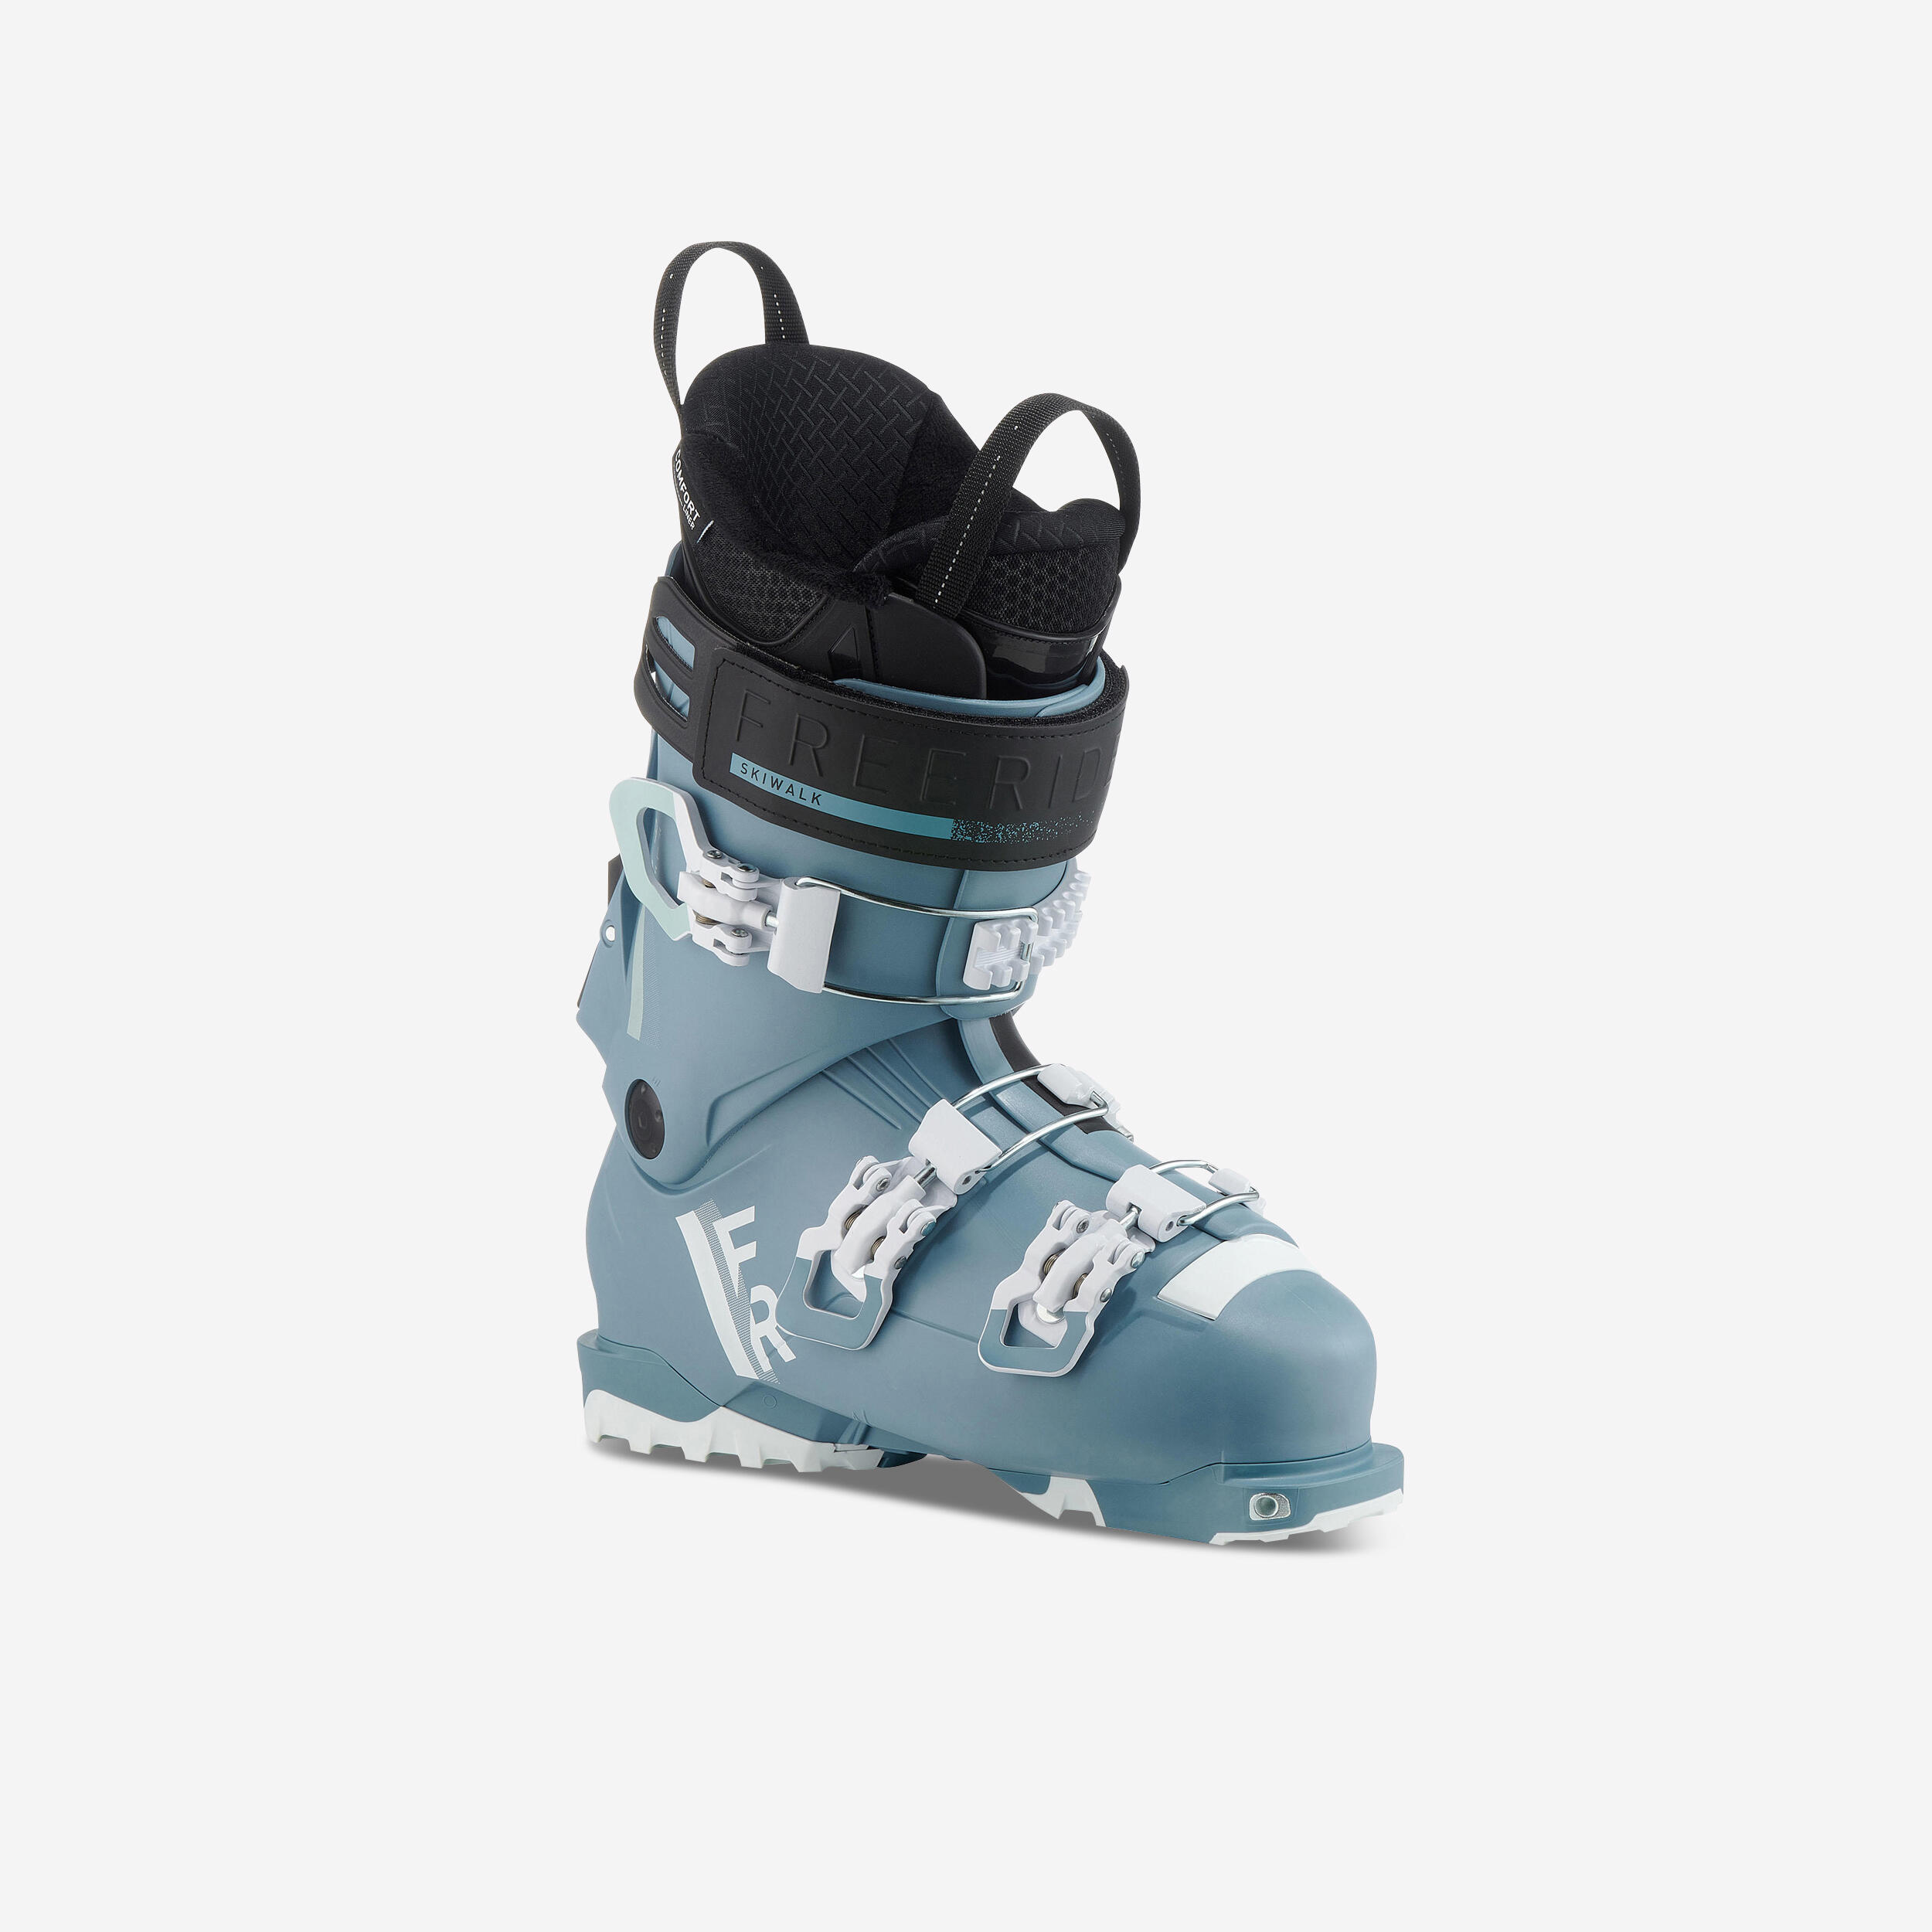 Bottes de ski hors-piste femme - FR 500 bleu - WEDZE